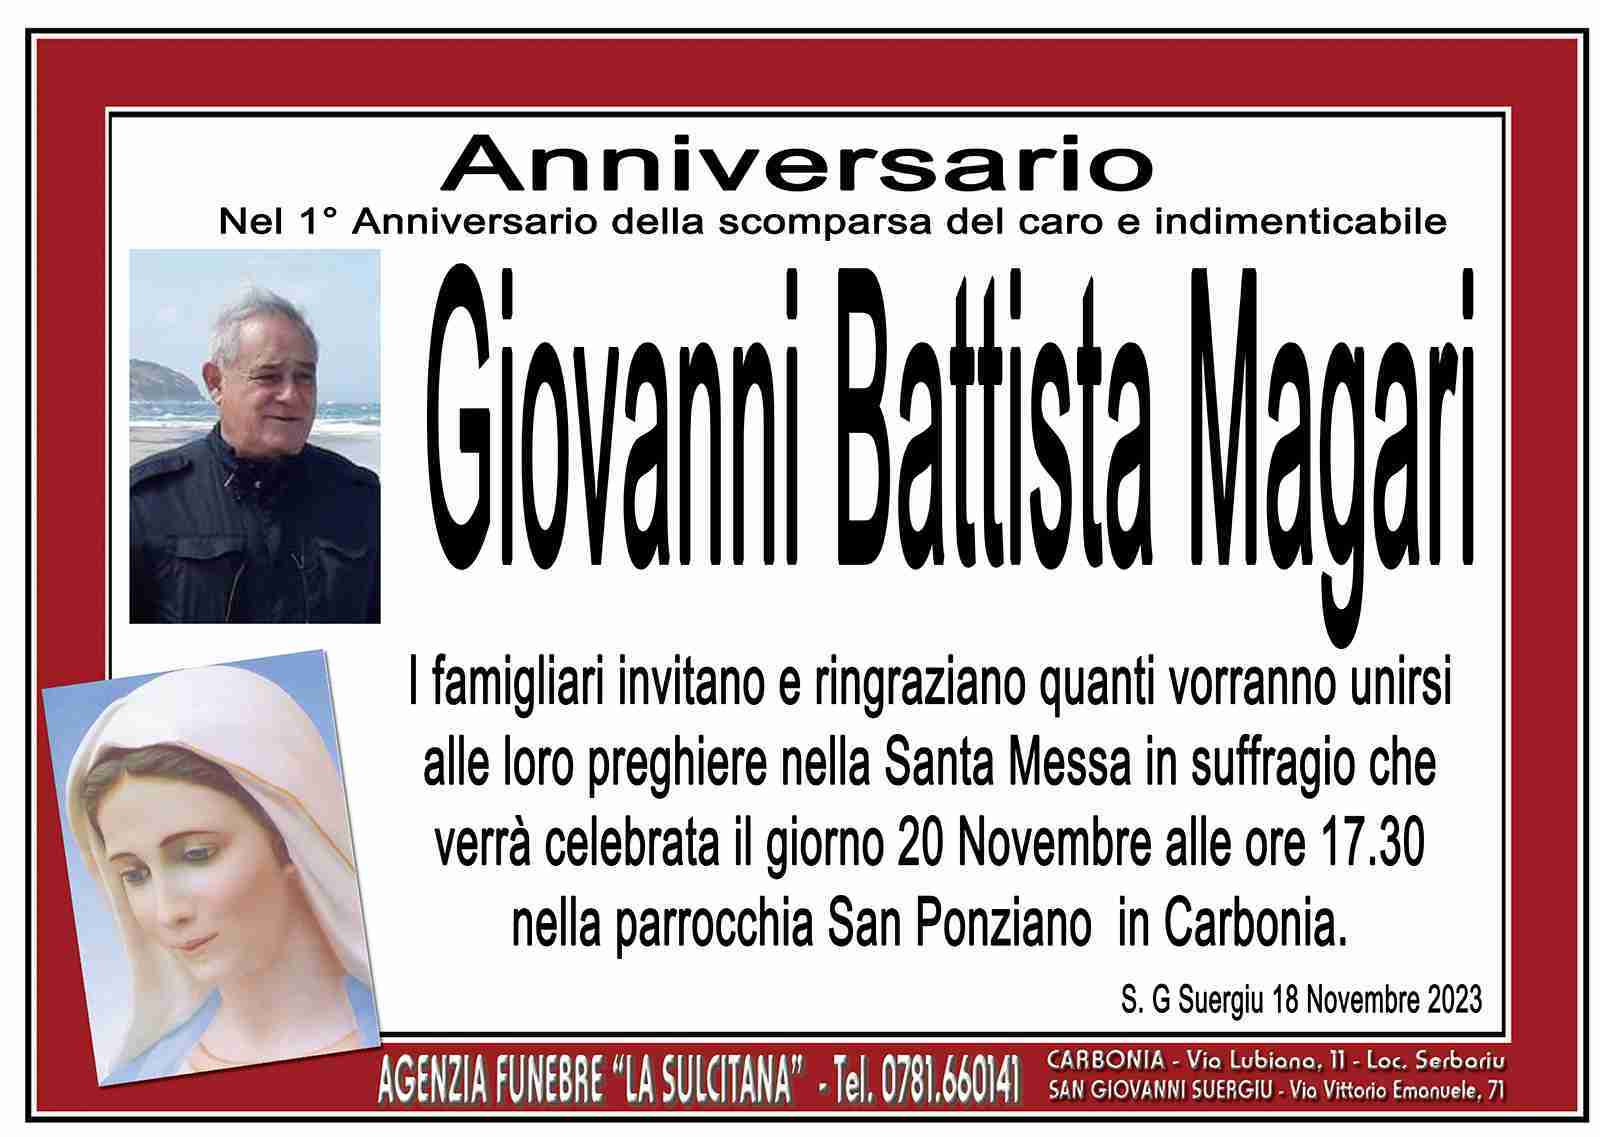 Giovanni Battista Magari